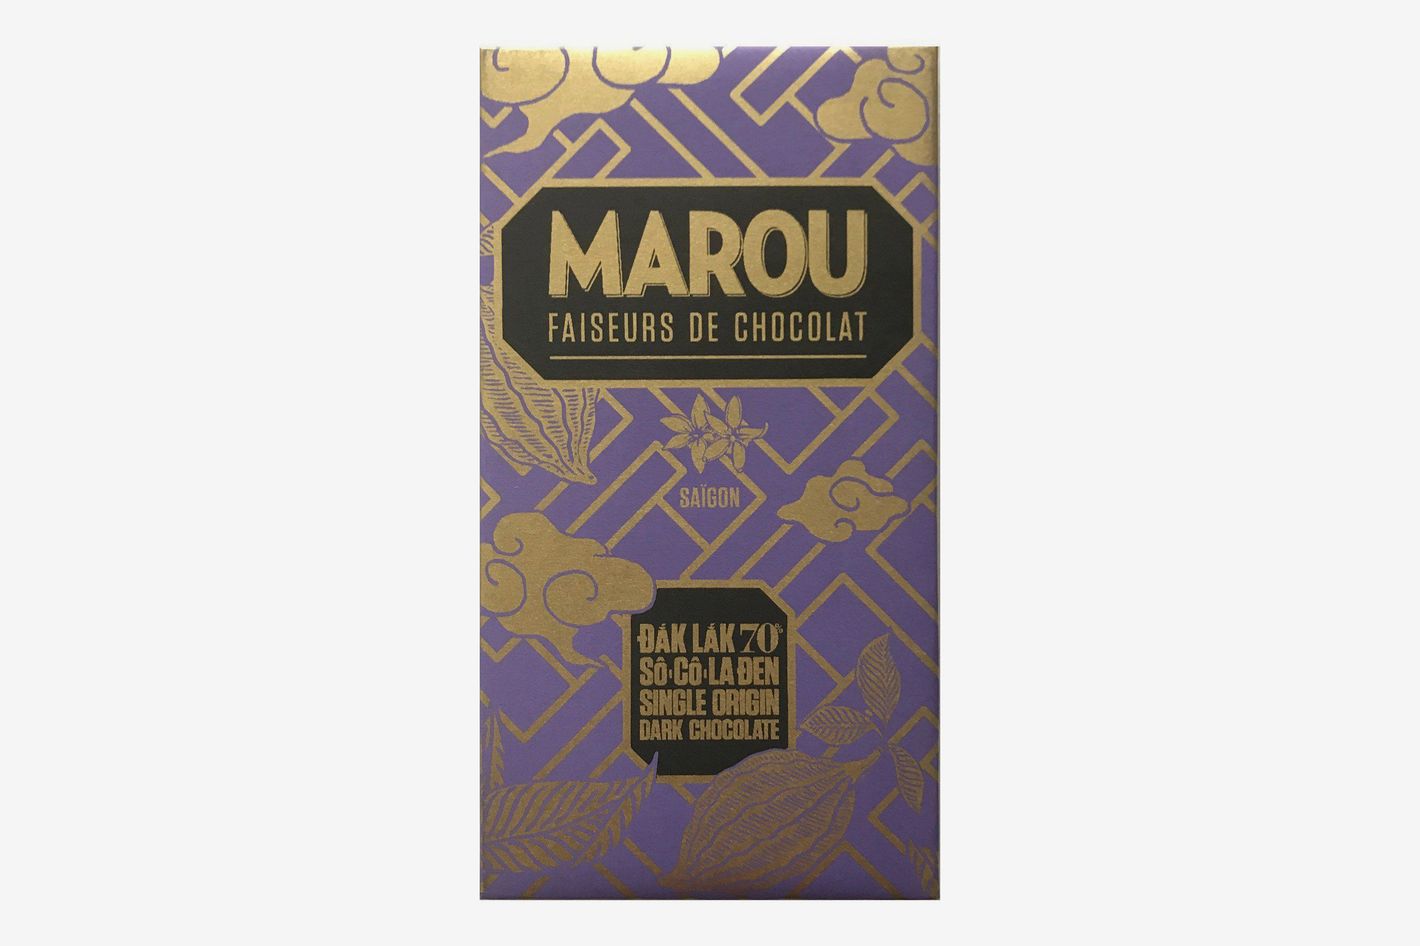 Marou Chocolate USA